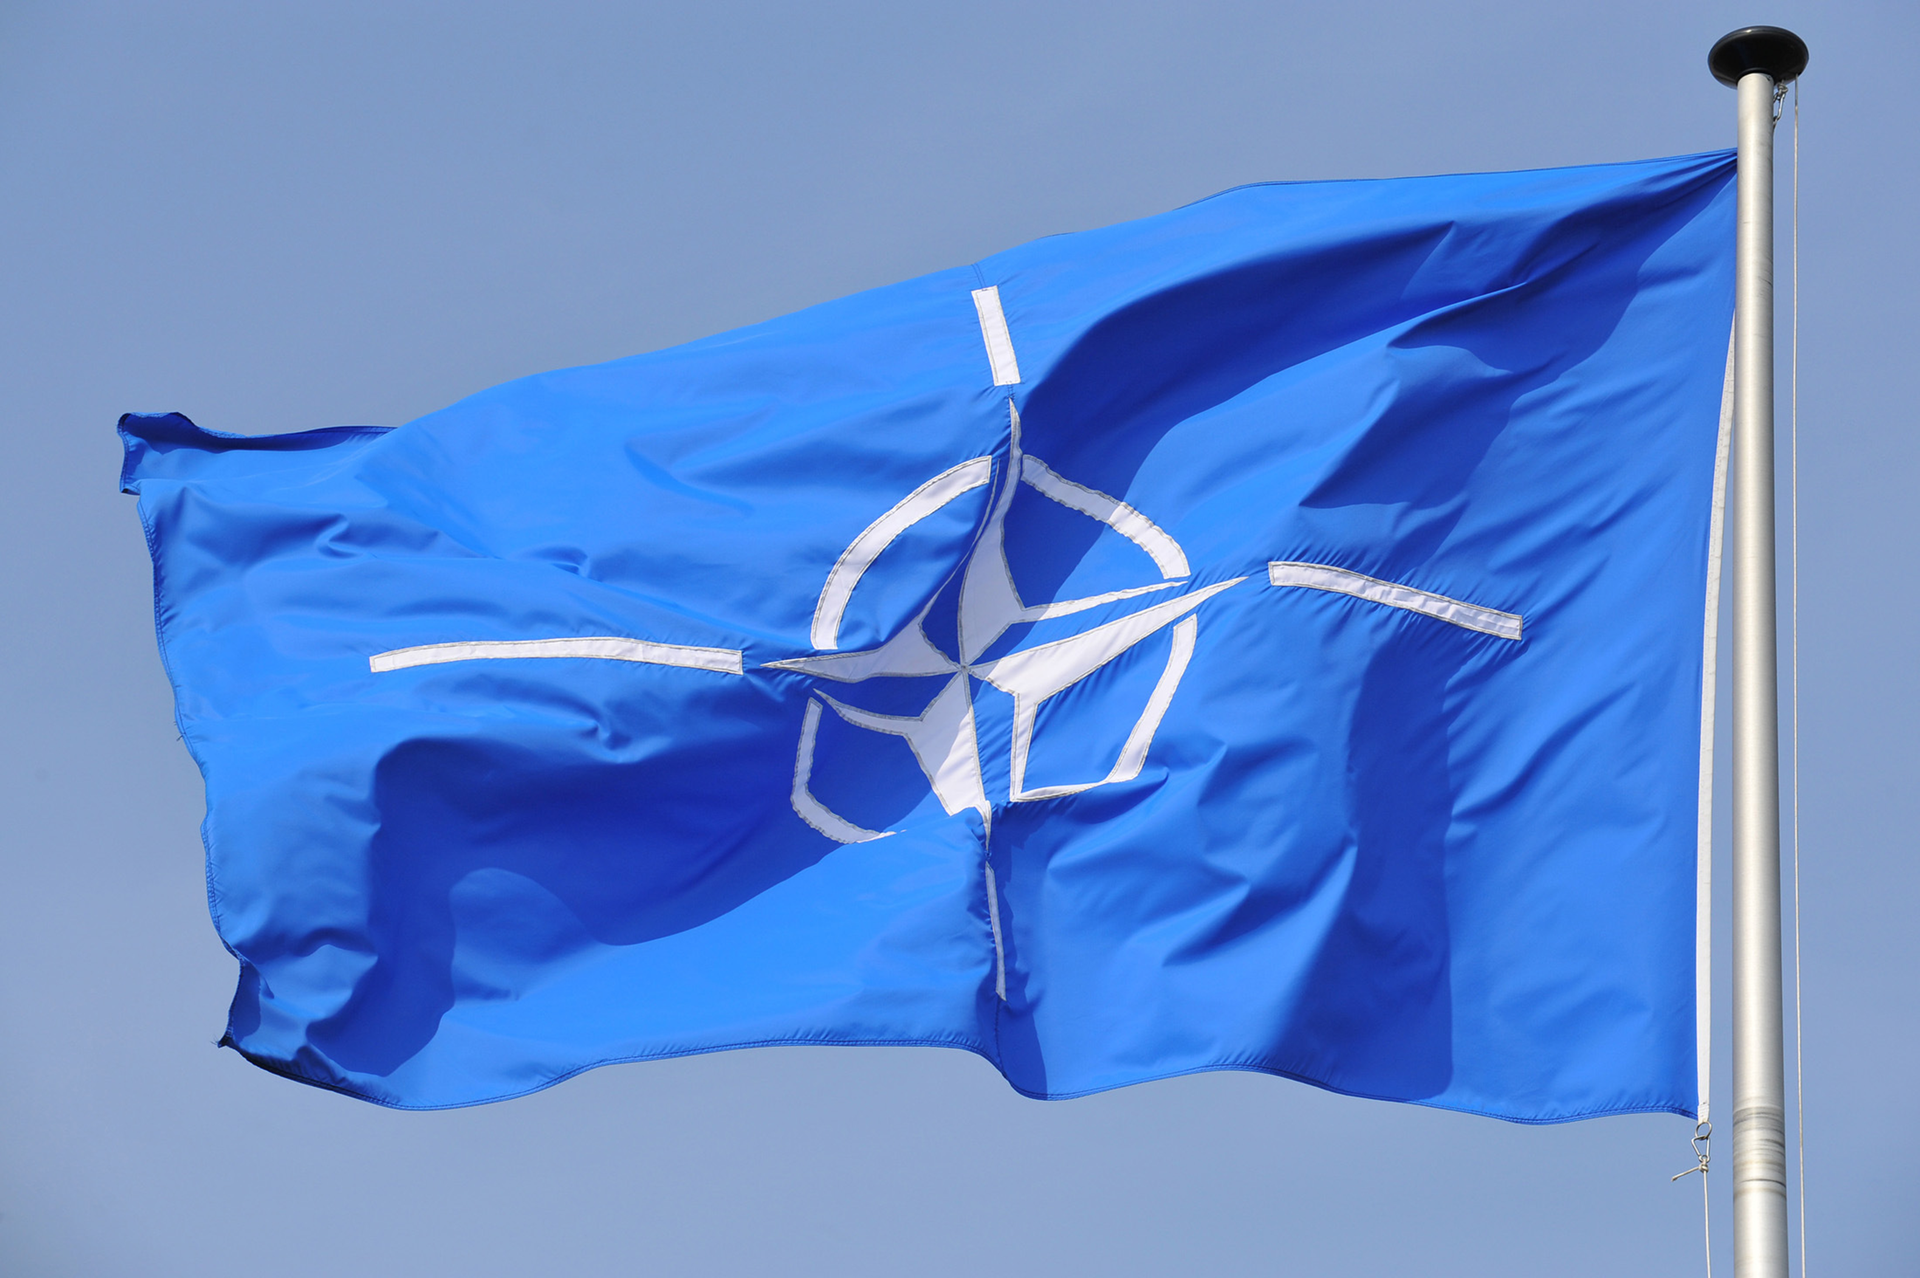 Zdjęcie przedstawia flagę NATO zawieszoną na maszcie. Maszt po prawej stronie. Flaga unosi się i jest skierowana w lewo. Na błękitnym tle znajduje się biały pierścień. W środku pierścienia czteroramienna gwiazda. To tak zwana róża kompasowa. Ramiona gwiazdy są zakończone białym, wąskim paskiem.